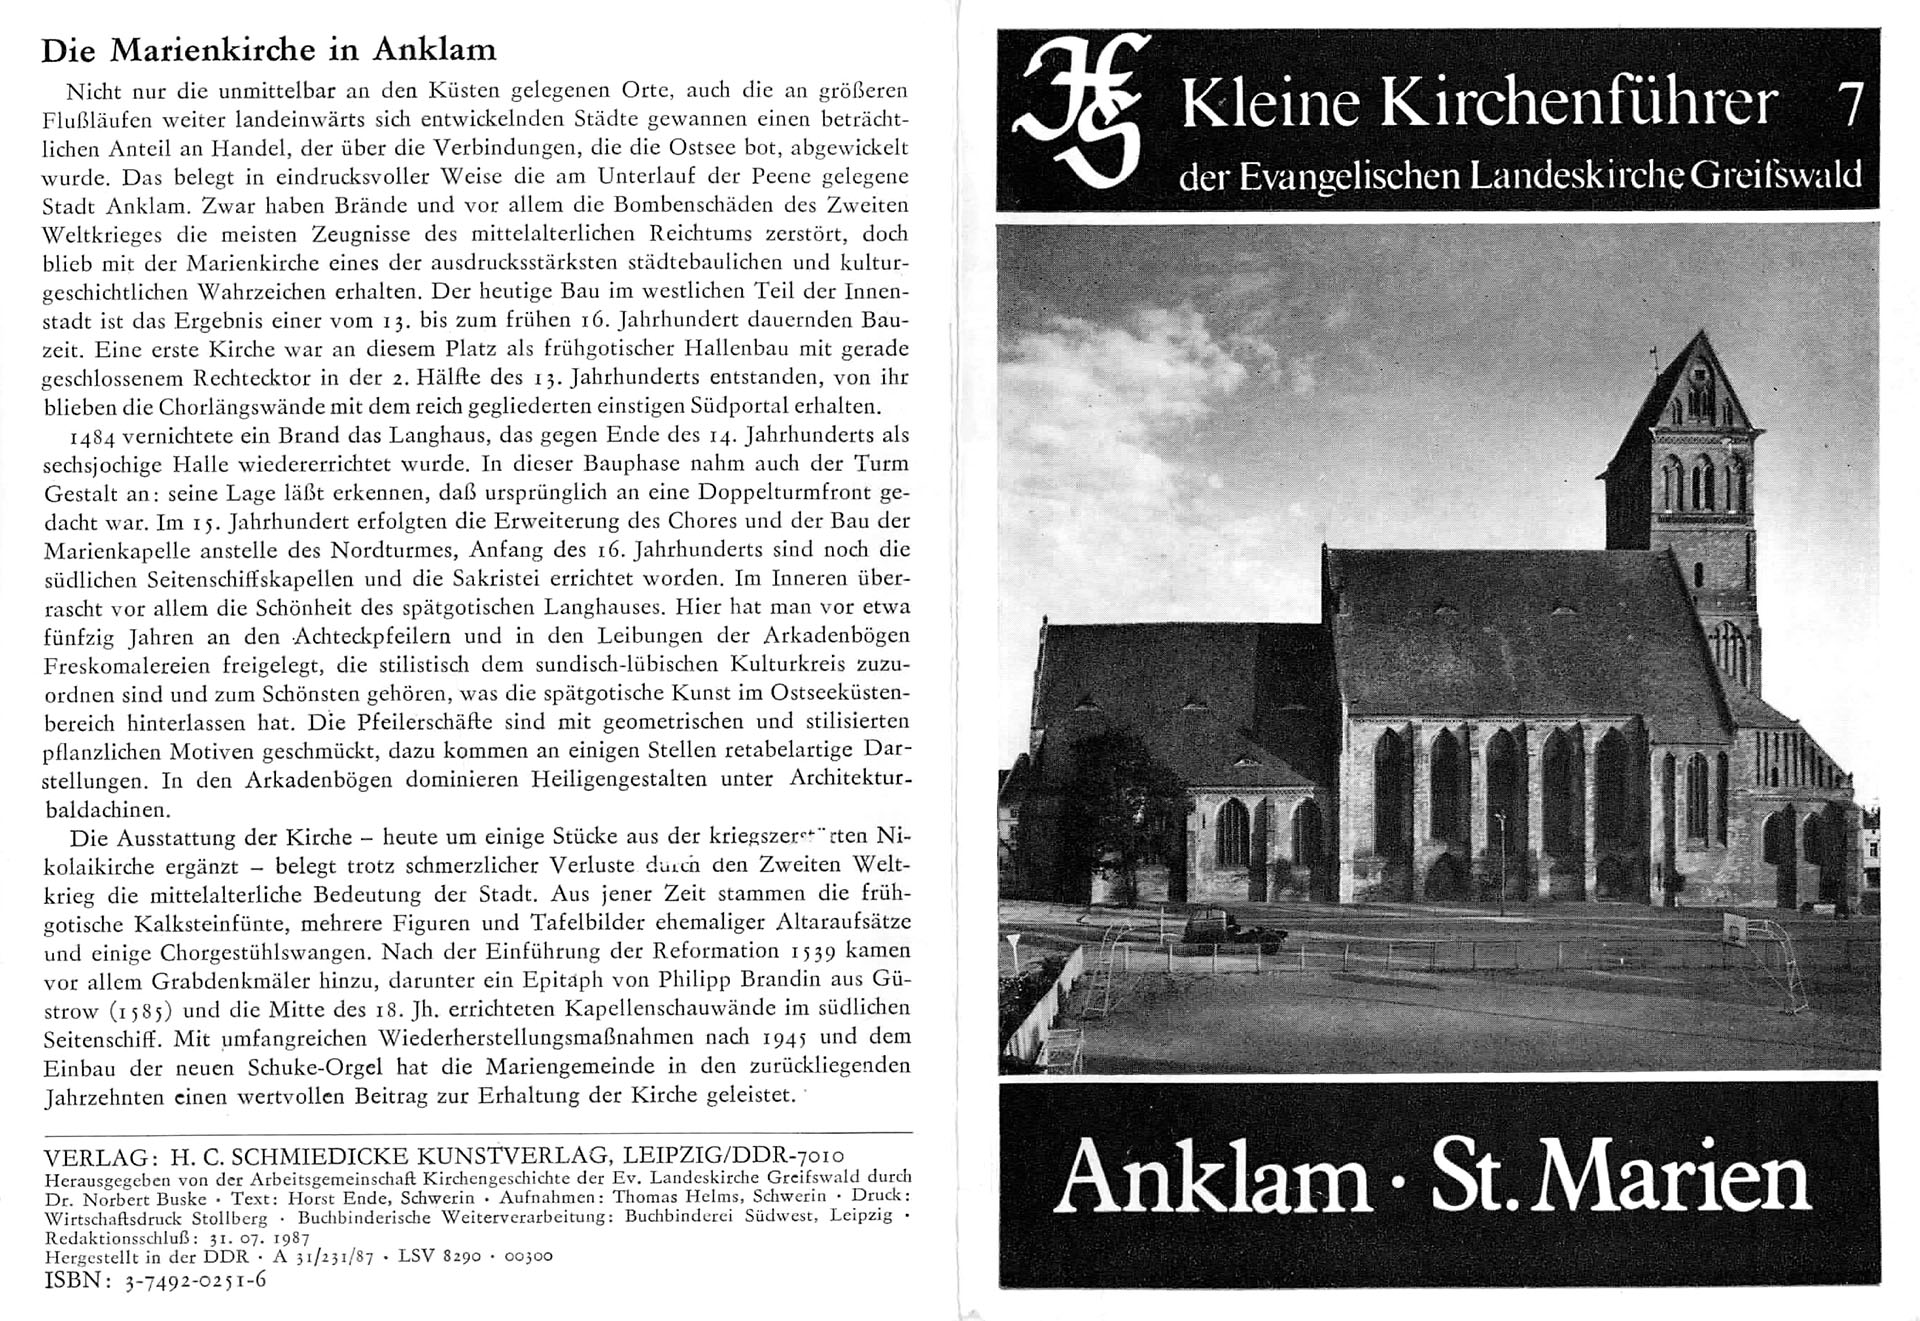 Anklam - St. Marien - Arbeitsgemeinschaft Kirchengeschichte der Evangelischen Landeskirche Greifswald